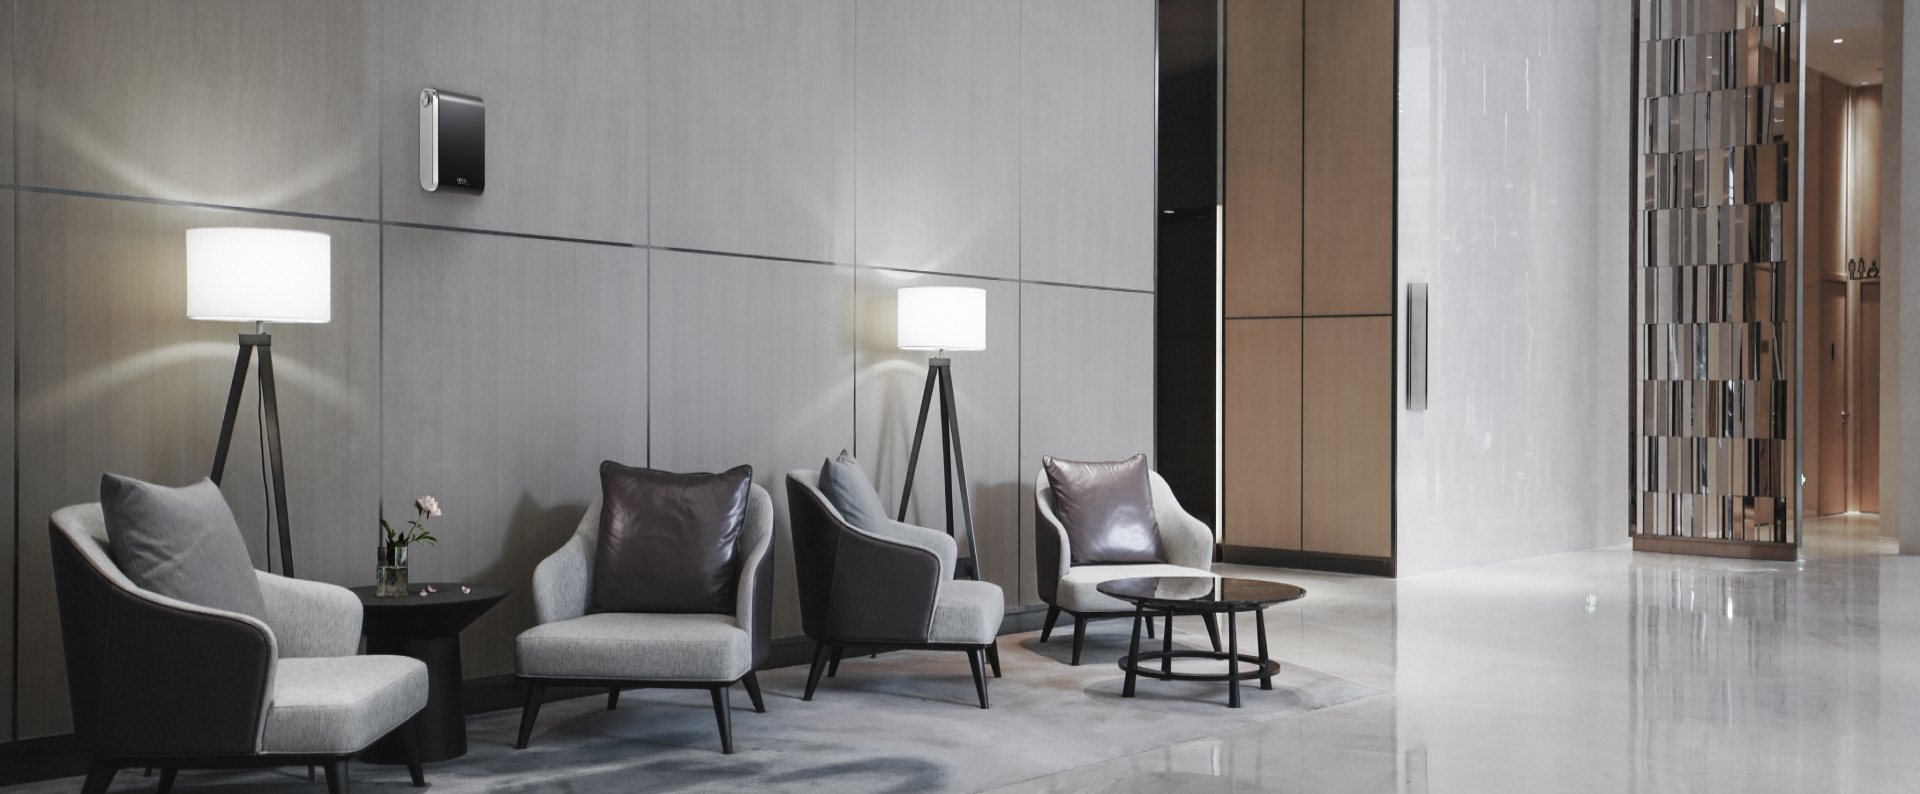 호텔, 리조트 등에 의자 및 탁자가 놓여있는 로비 공간 위쪽 벽면에는 쾌적하고 향기로운 공간을 만들어주는 세스코(CESCO)의 에어퍼퓸이 벽면에 설치되어 있습니다.